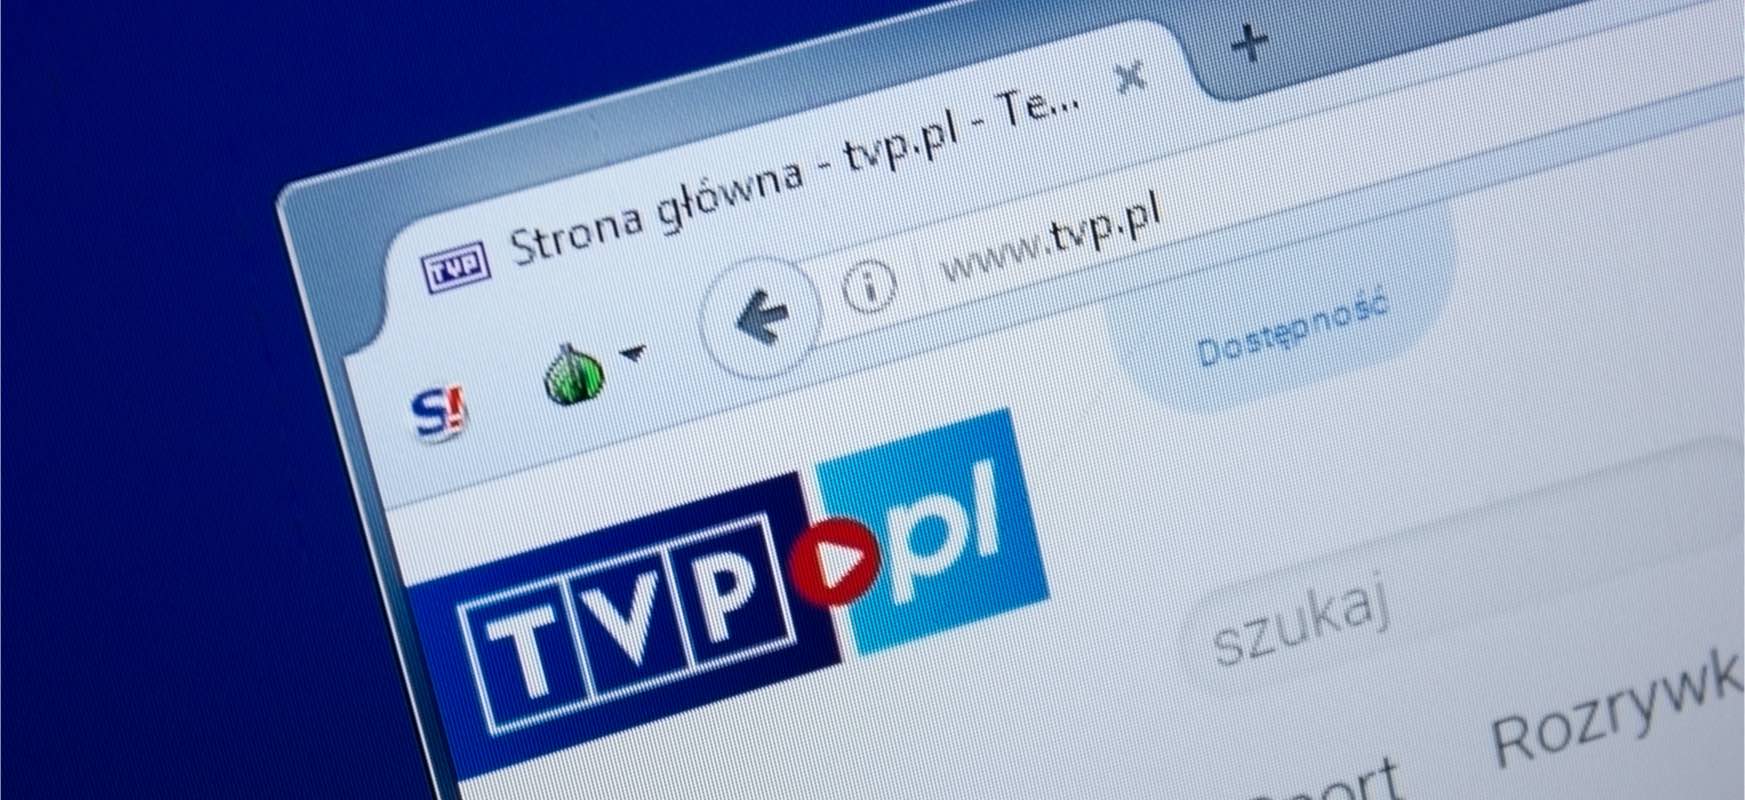  TVPk PLN 12 milioi gastatu nahi ditu programazio zerbitzuetan.  Telebista diru publiko bihurtzen al da?
